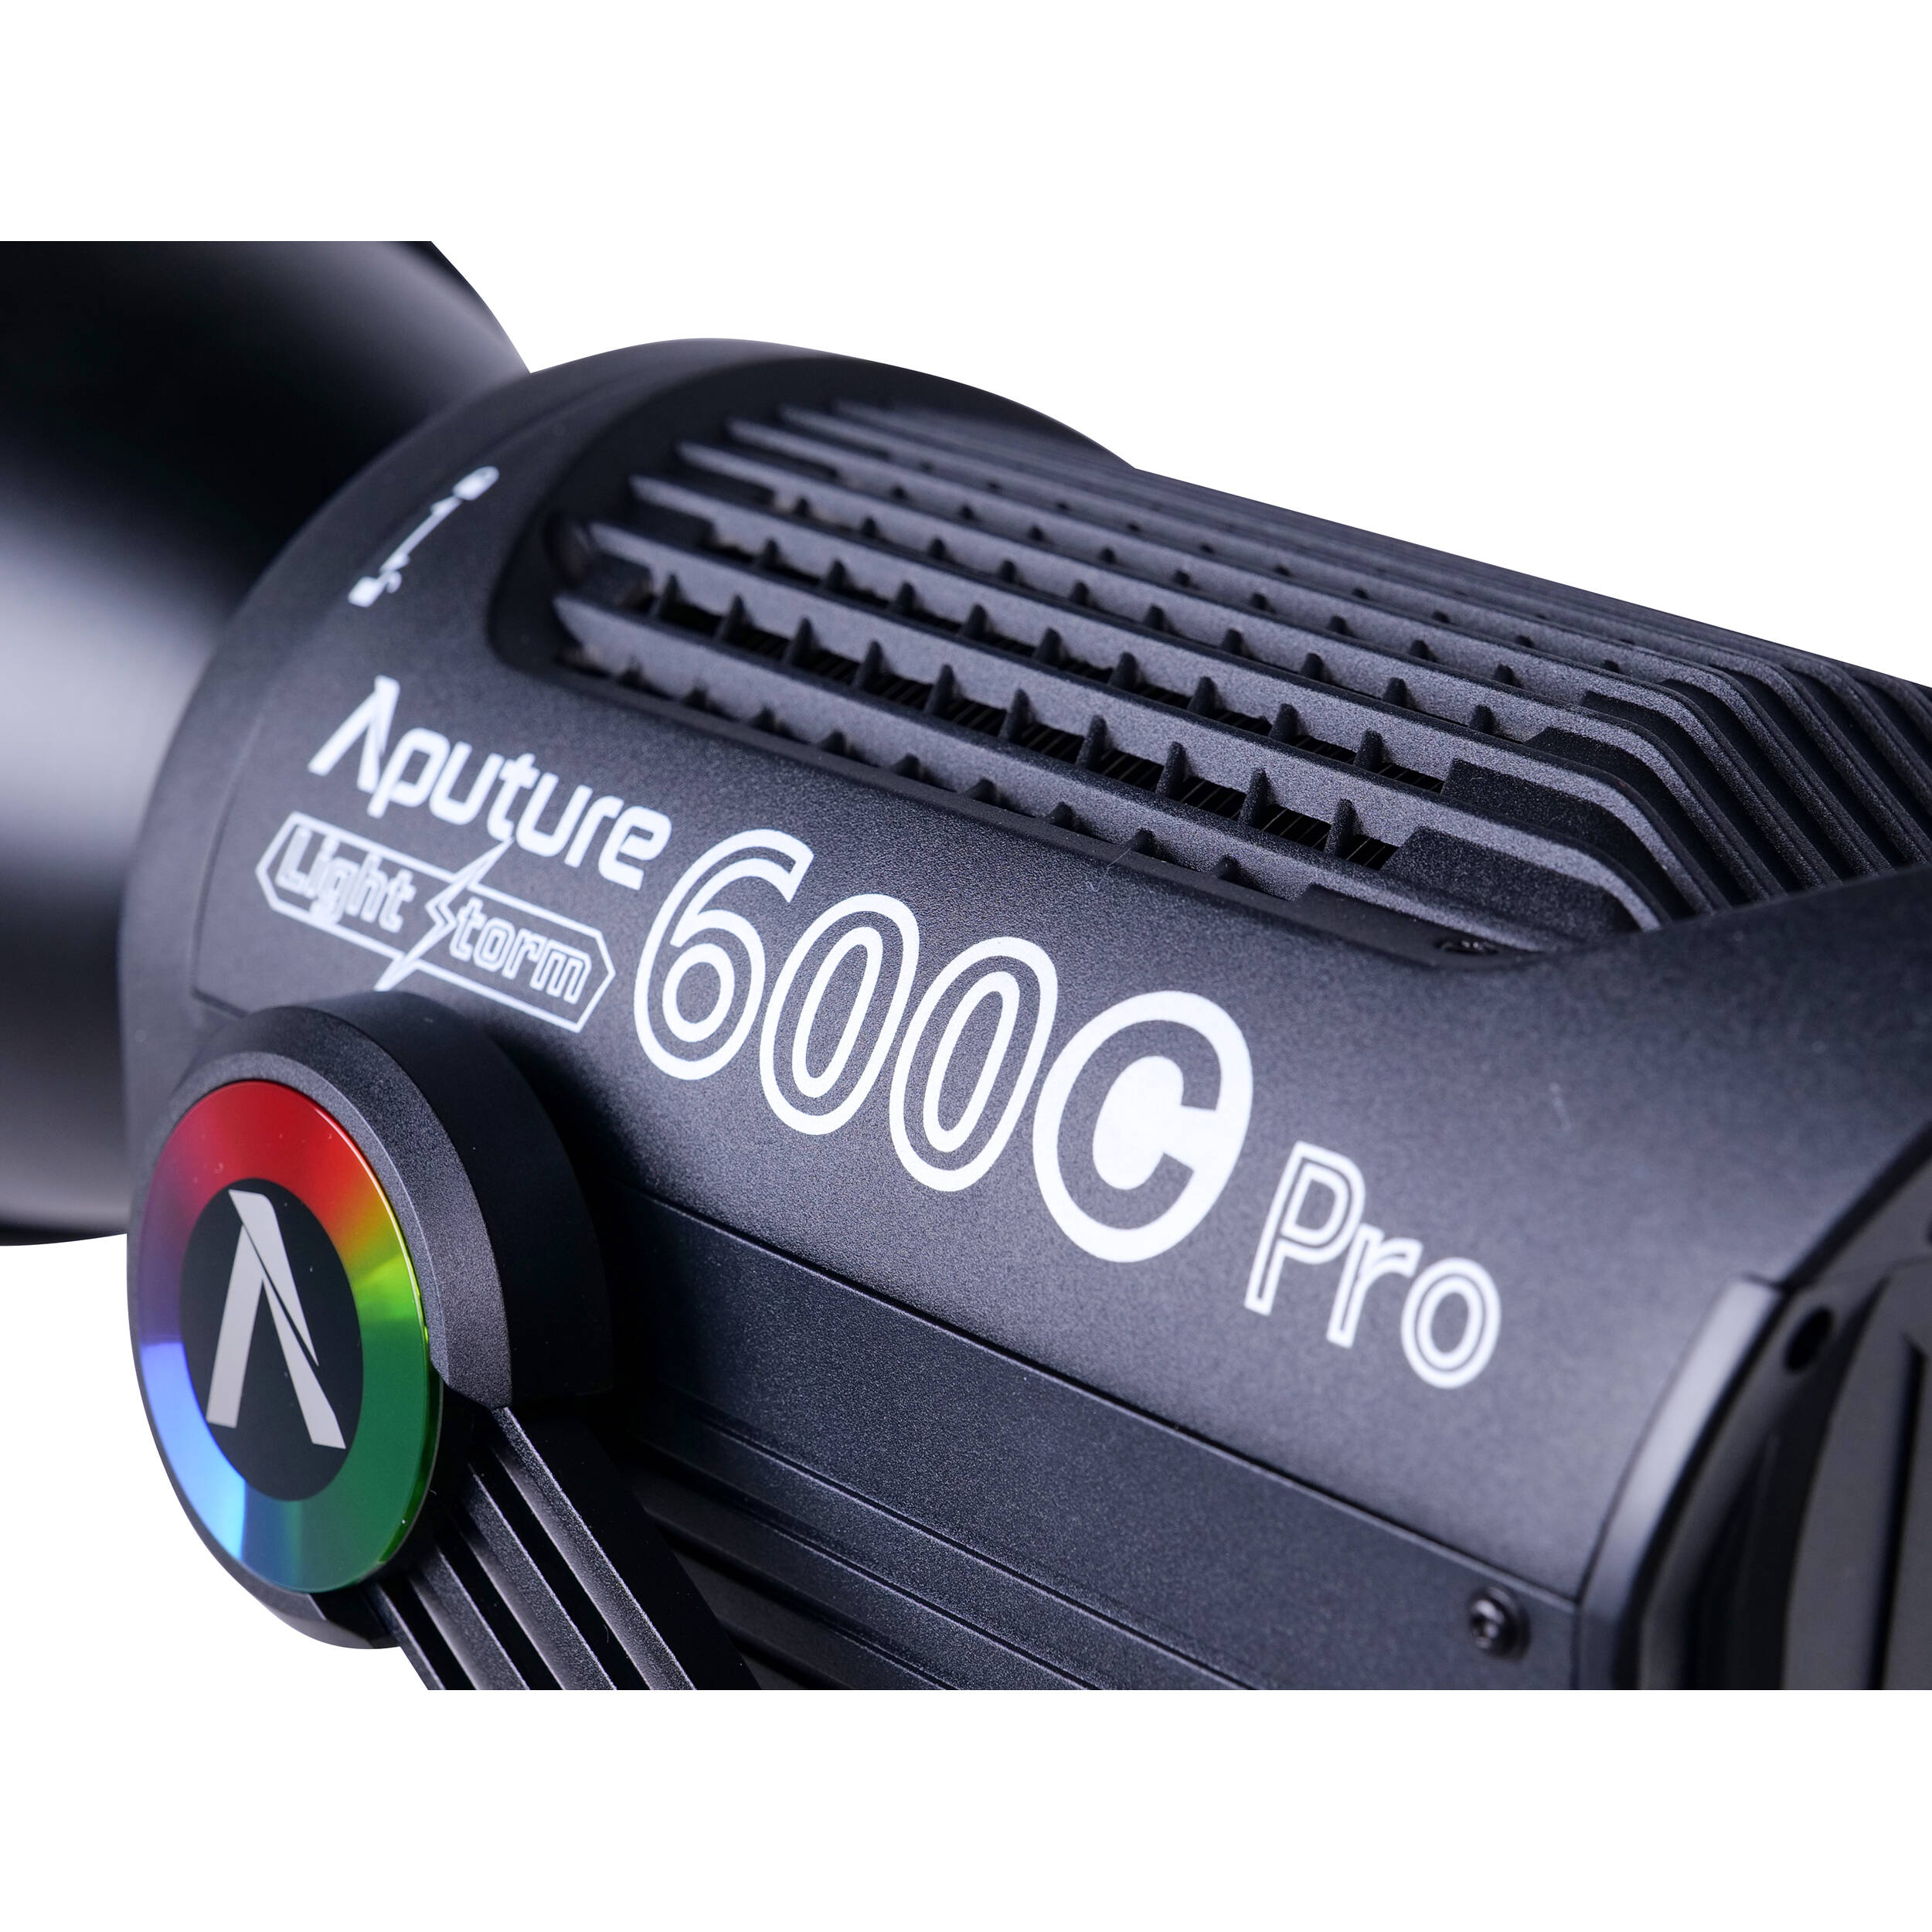 Aputure Light Storm 600c Pro RGBWW LED Light, V-Mount